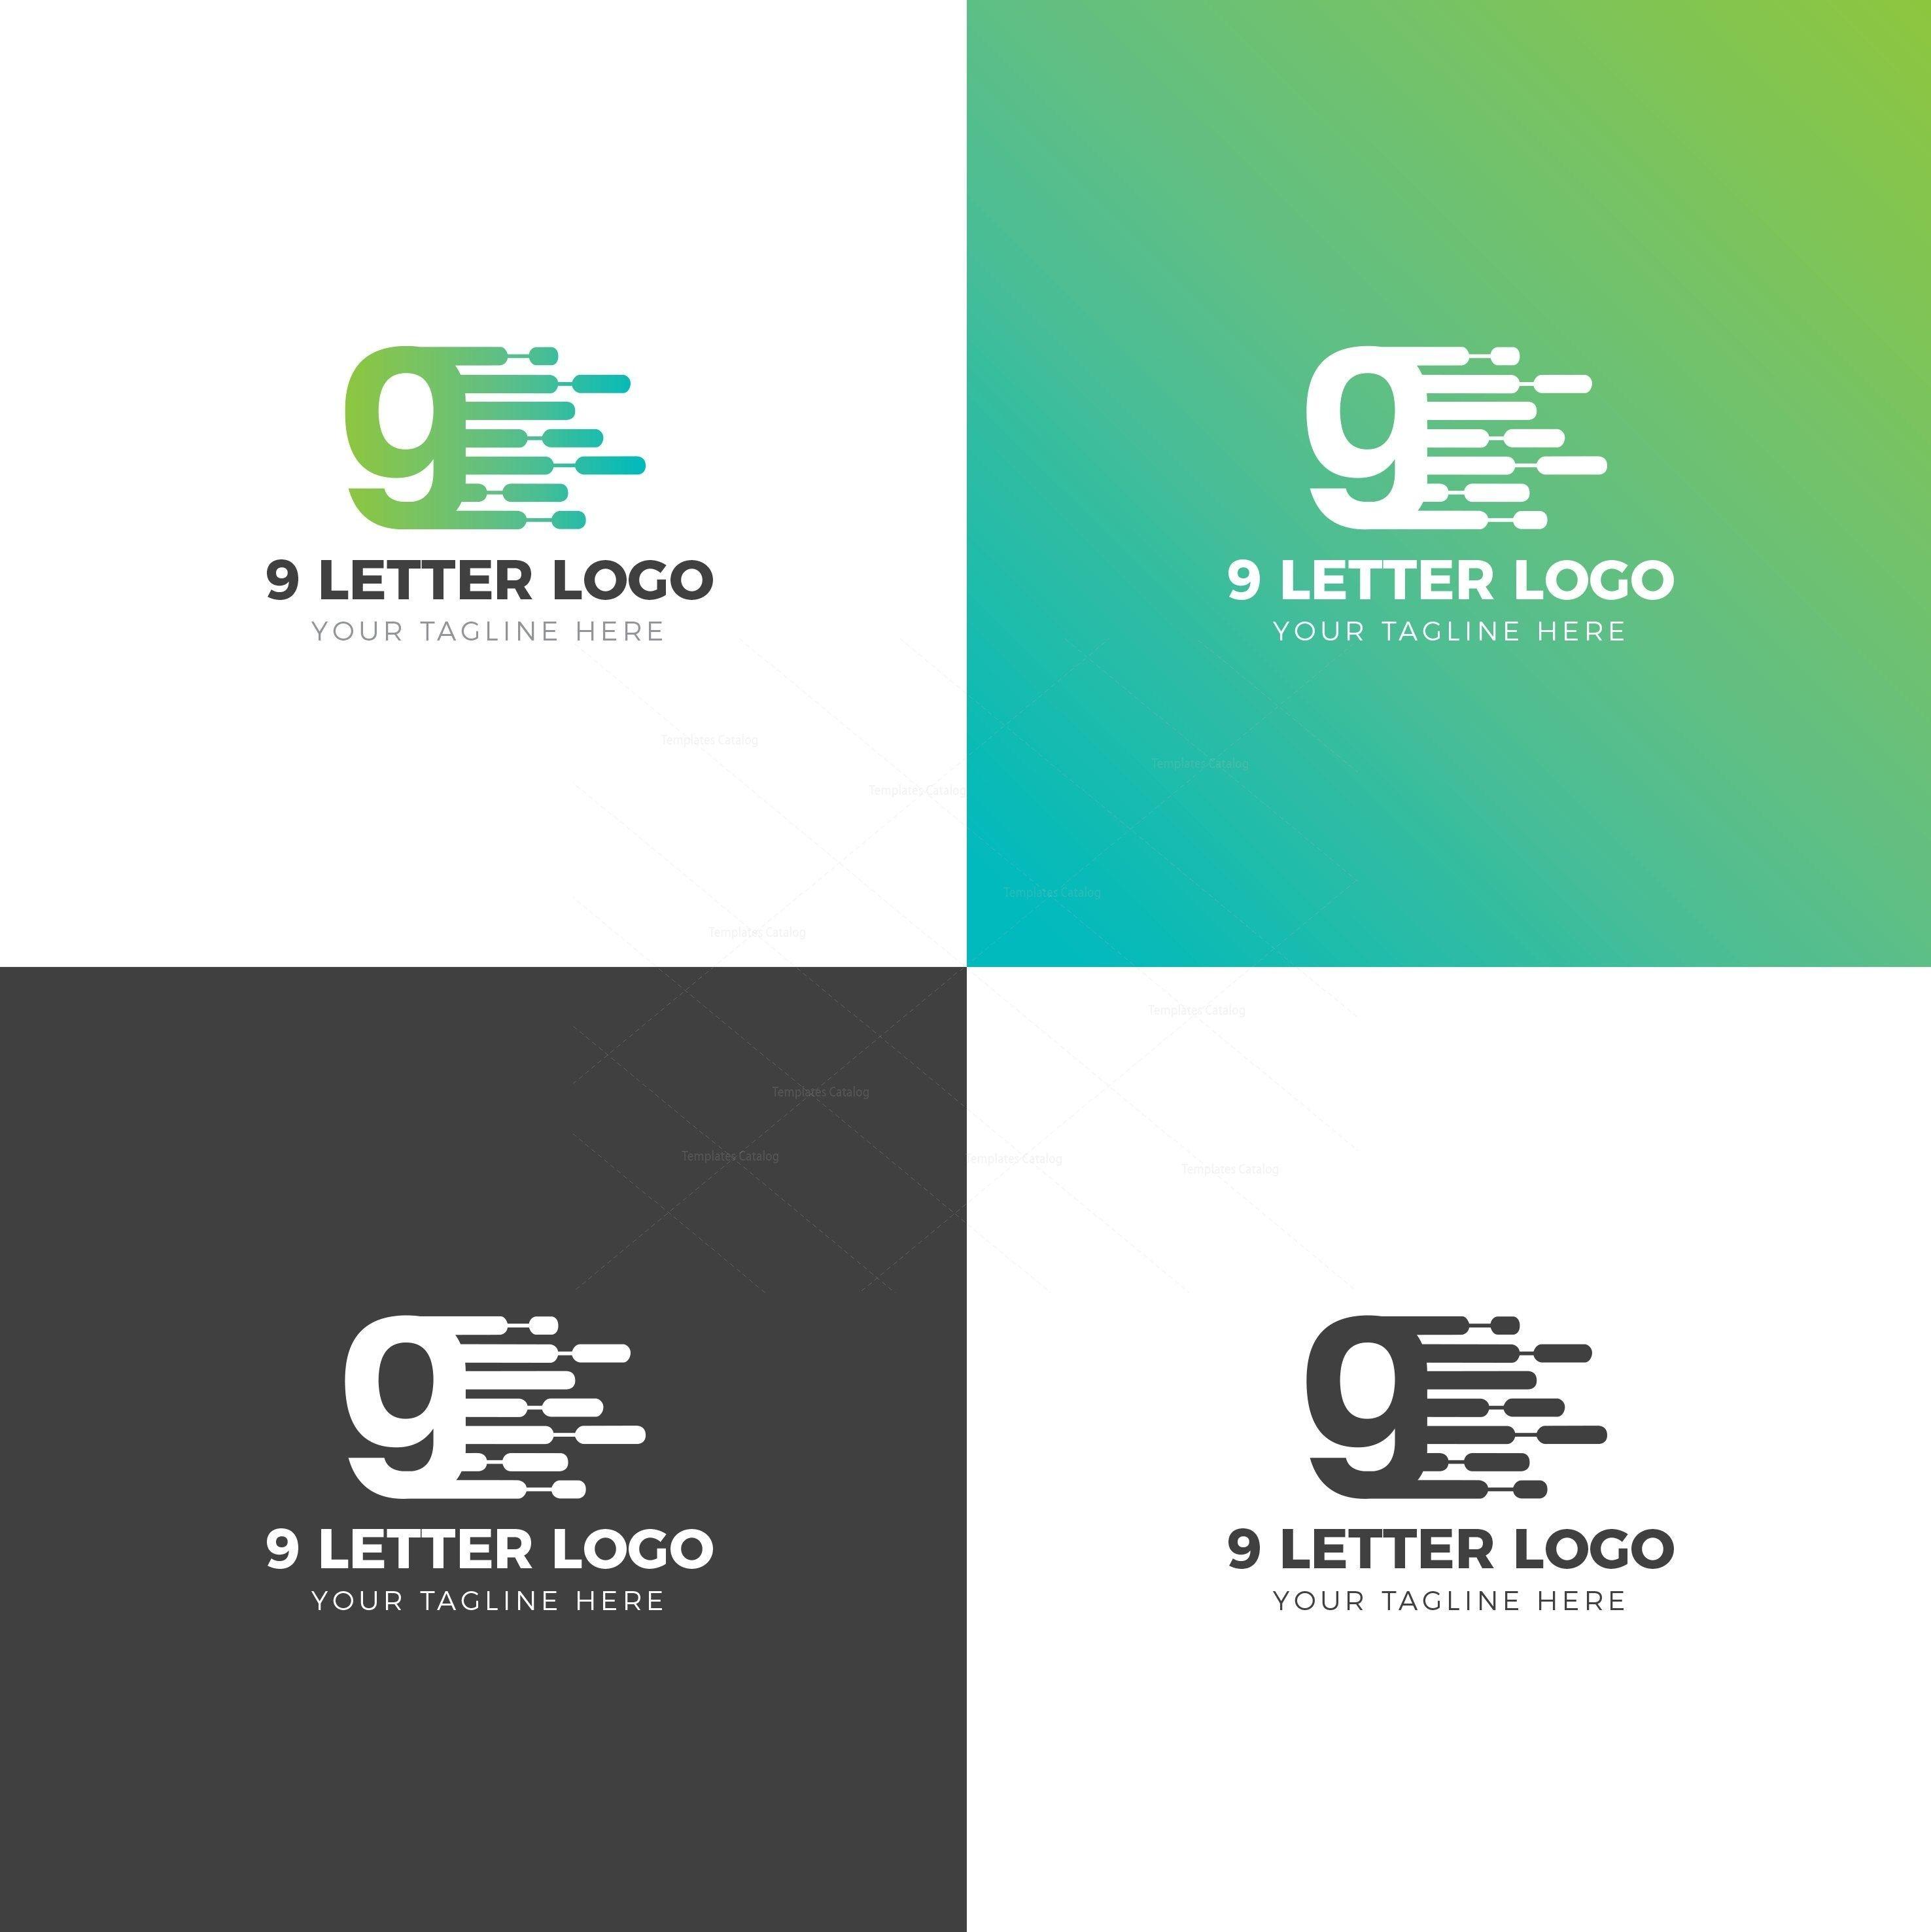 9 Letter Logo - Number Creative Logo Design Template 002041